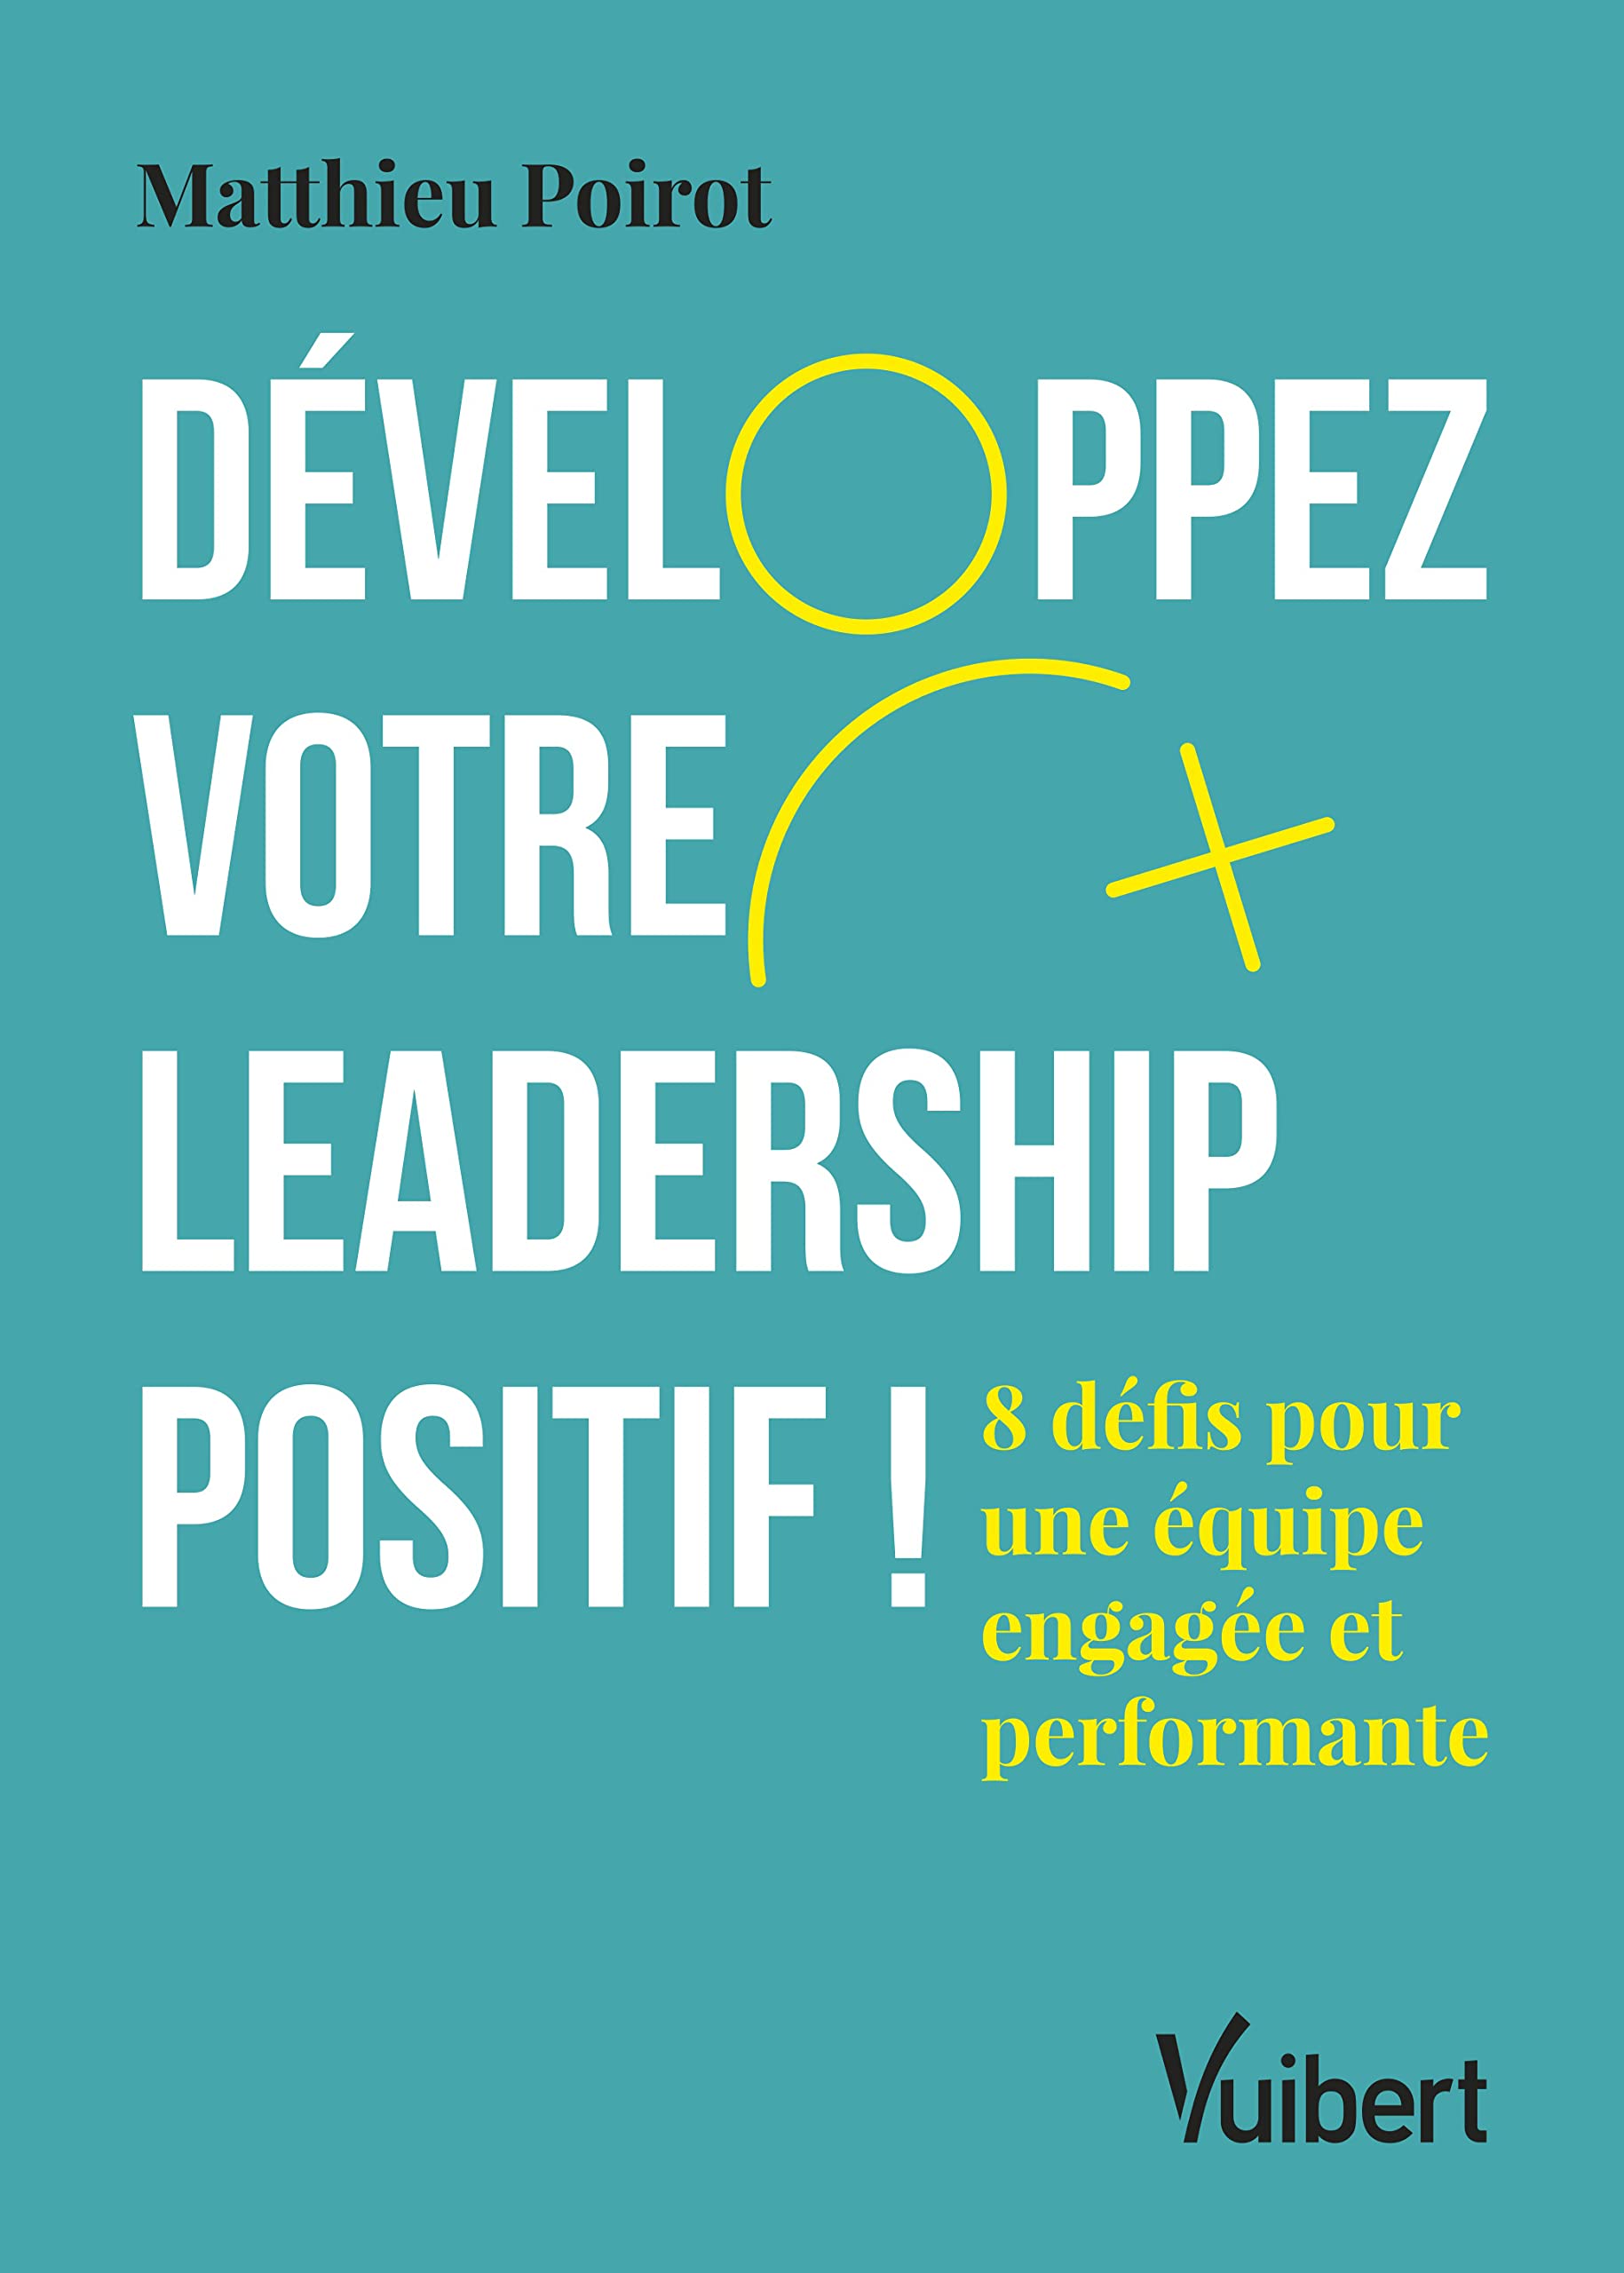 Développez votre leadership positif !: 8 défis pour une équipe engagée et performante